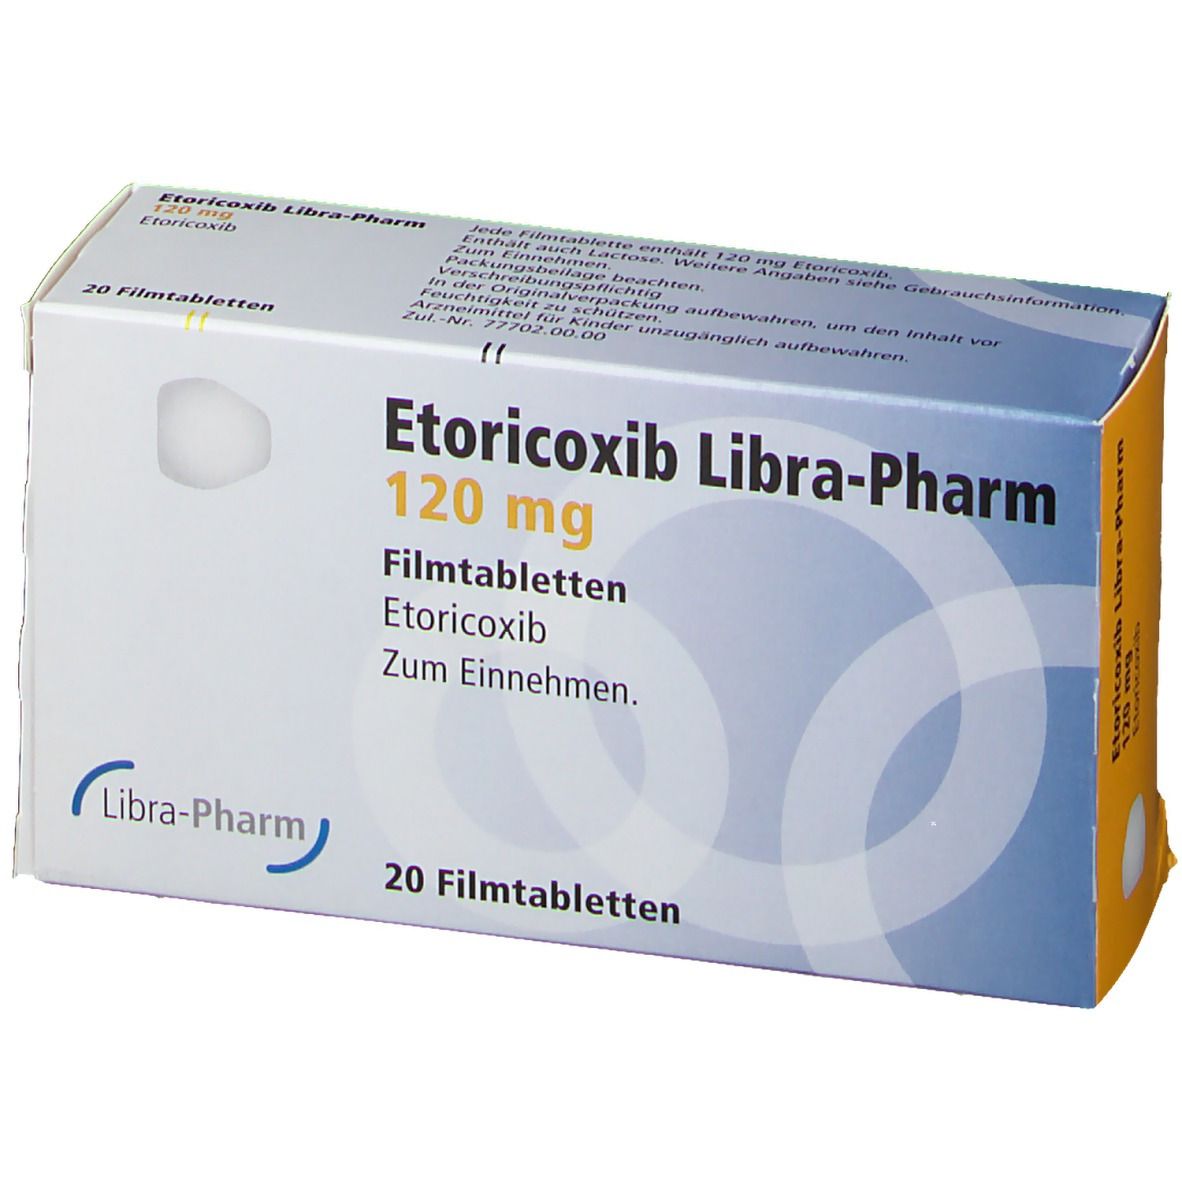 Etoricoxib Libra-Pharm 120 mg